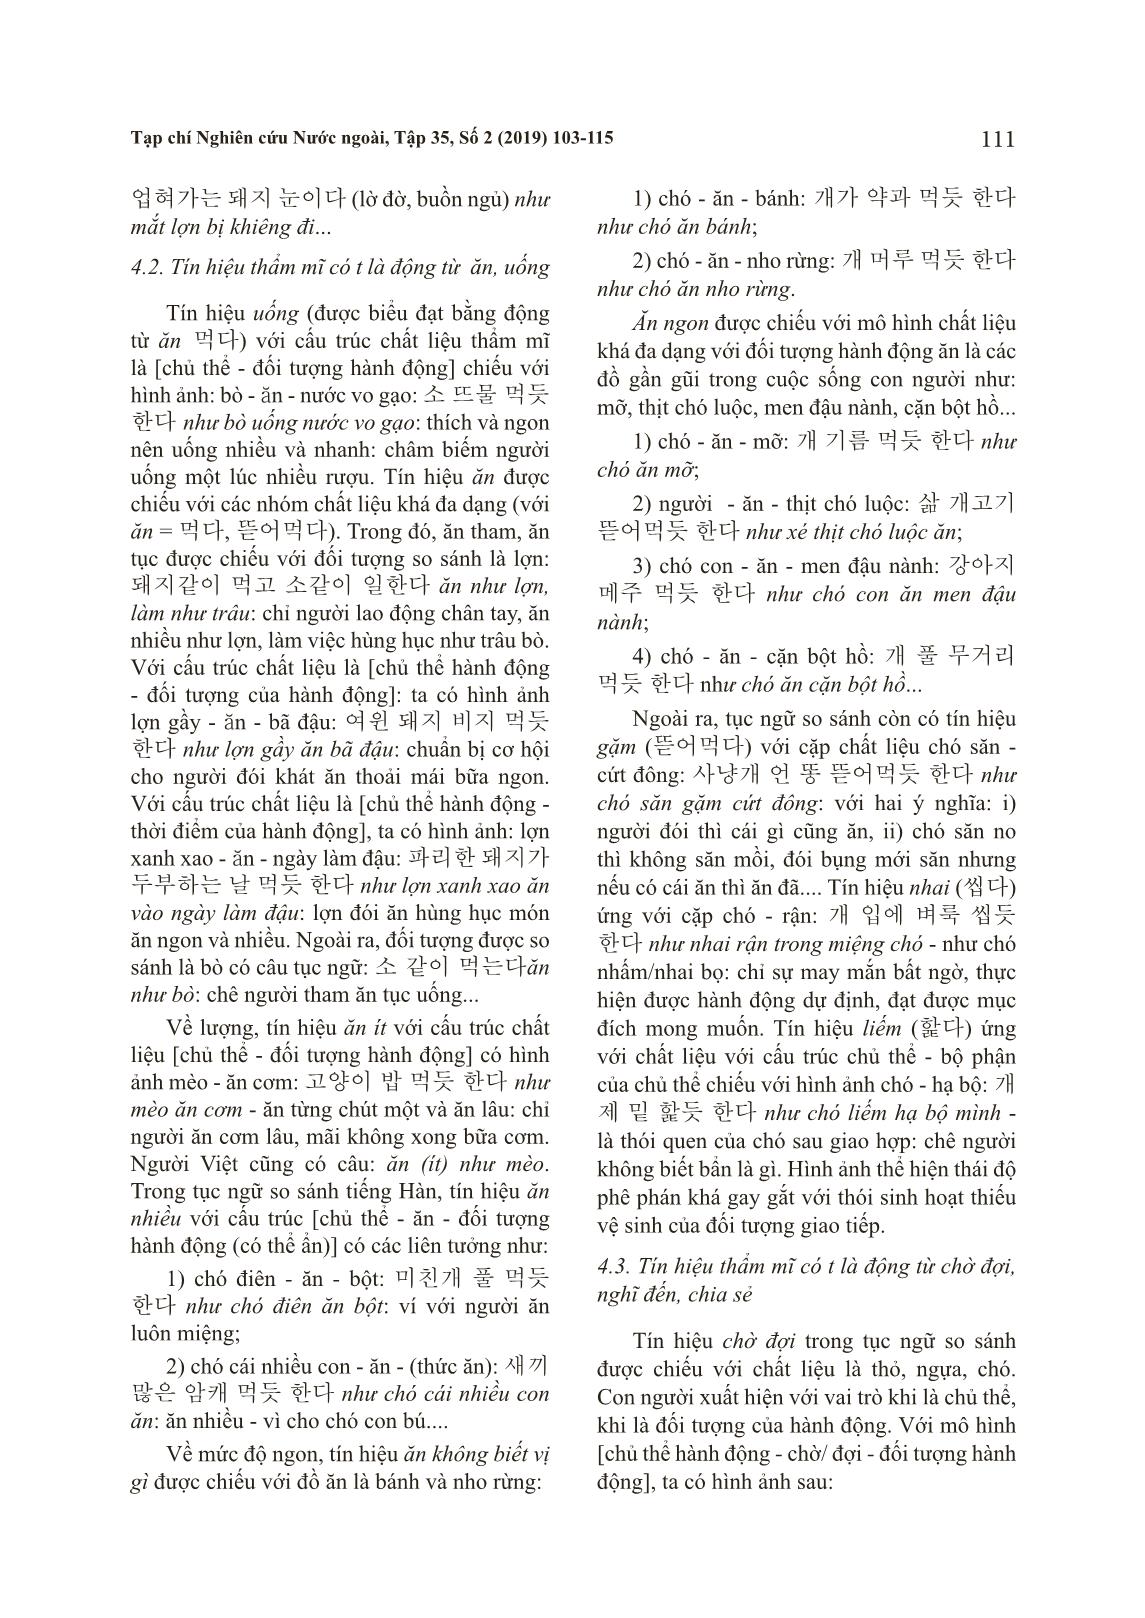 Đặc trưng tín hiệu thẩm mĩ của tục ngữ so sánh tiếng Hàn có yếu tố chỉ con giáp trang 9